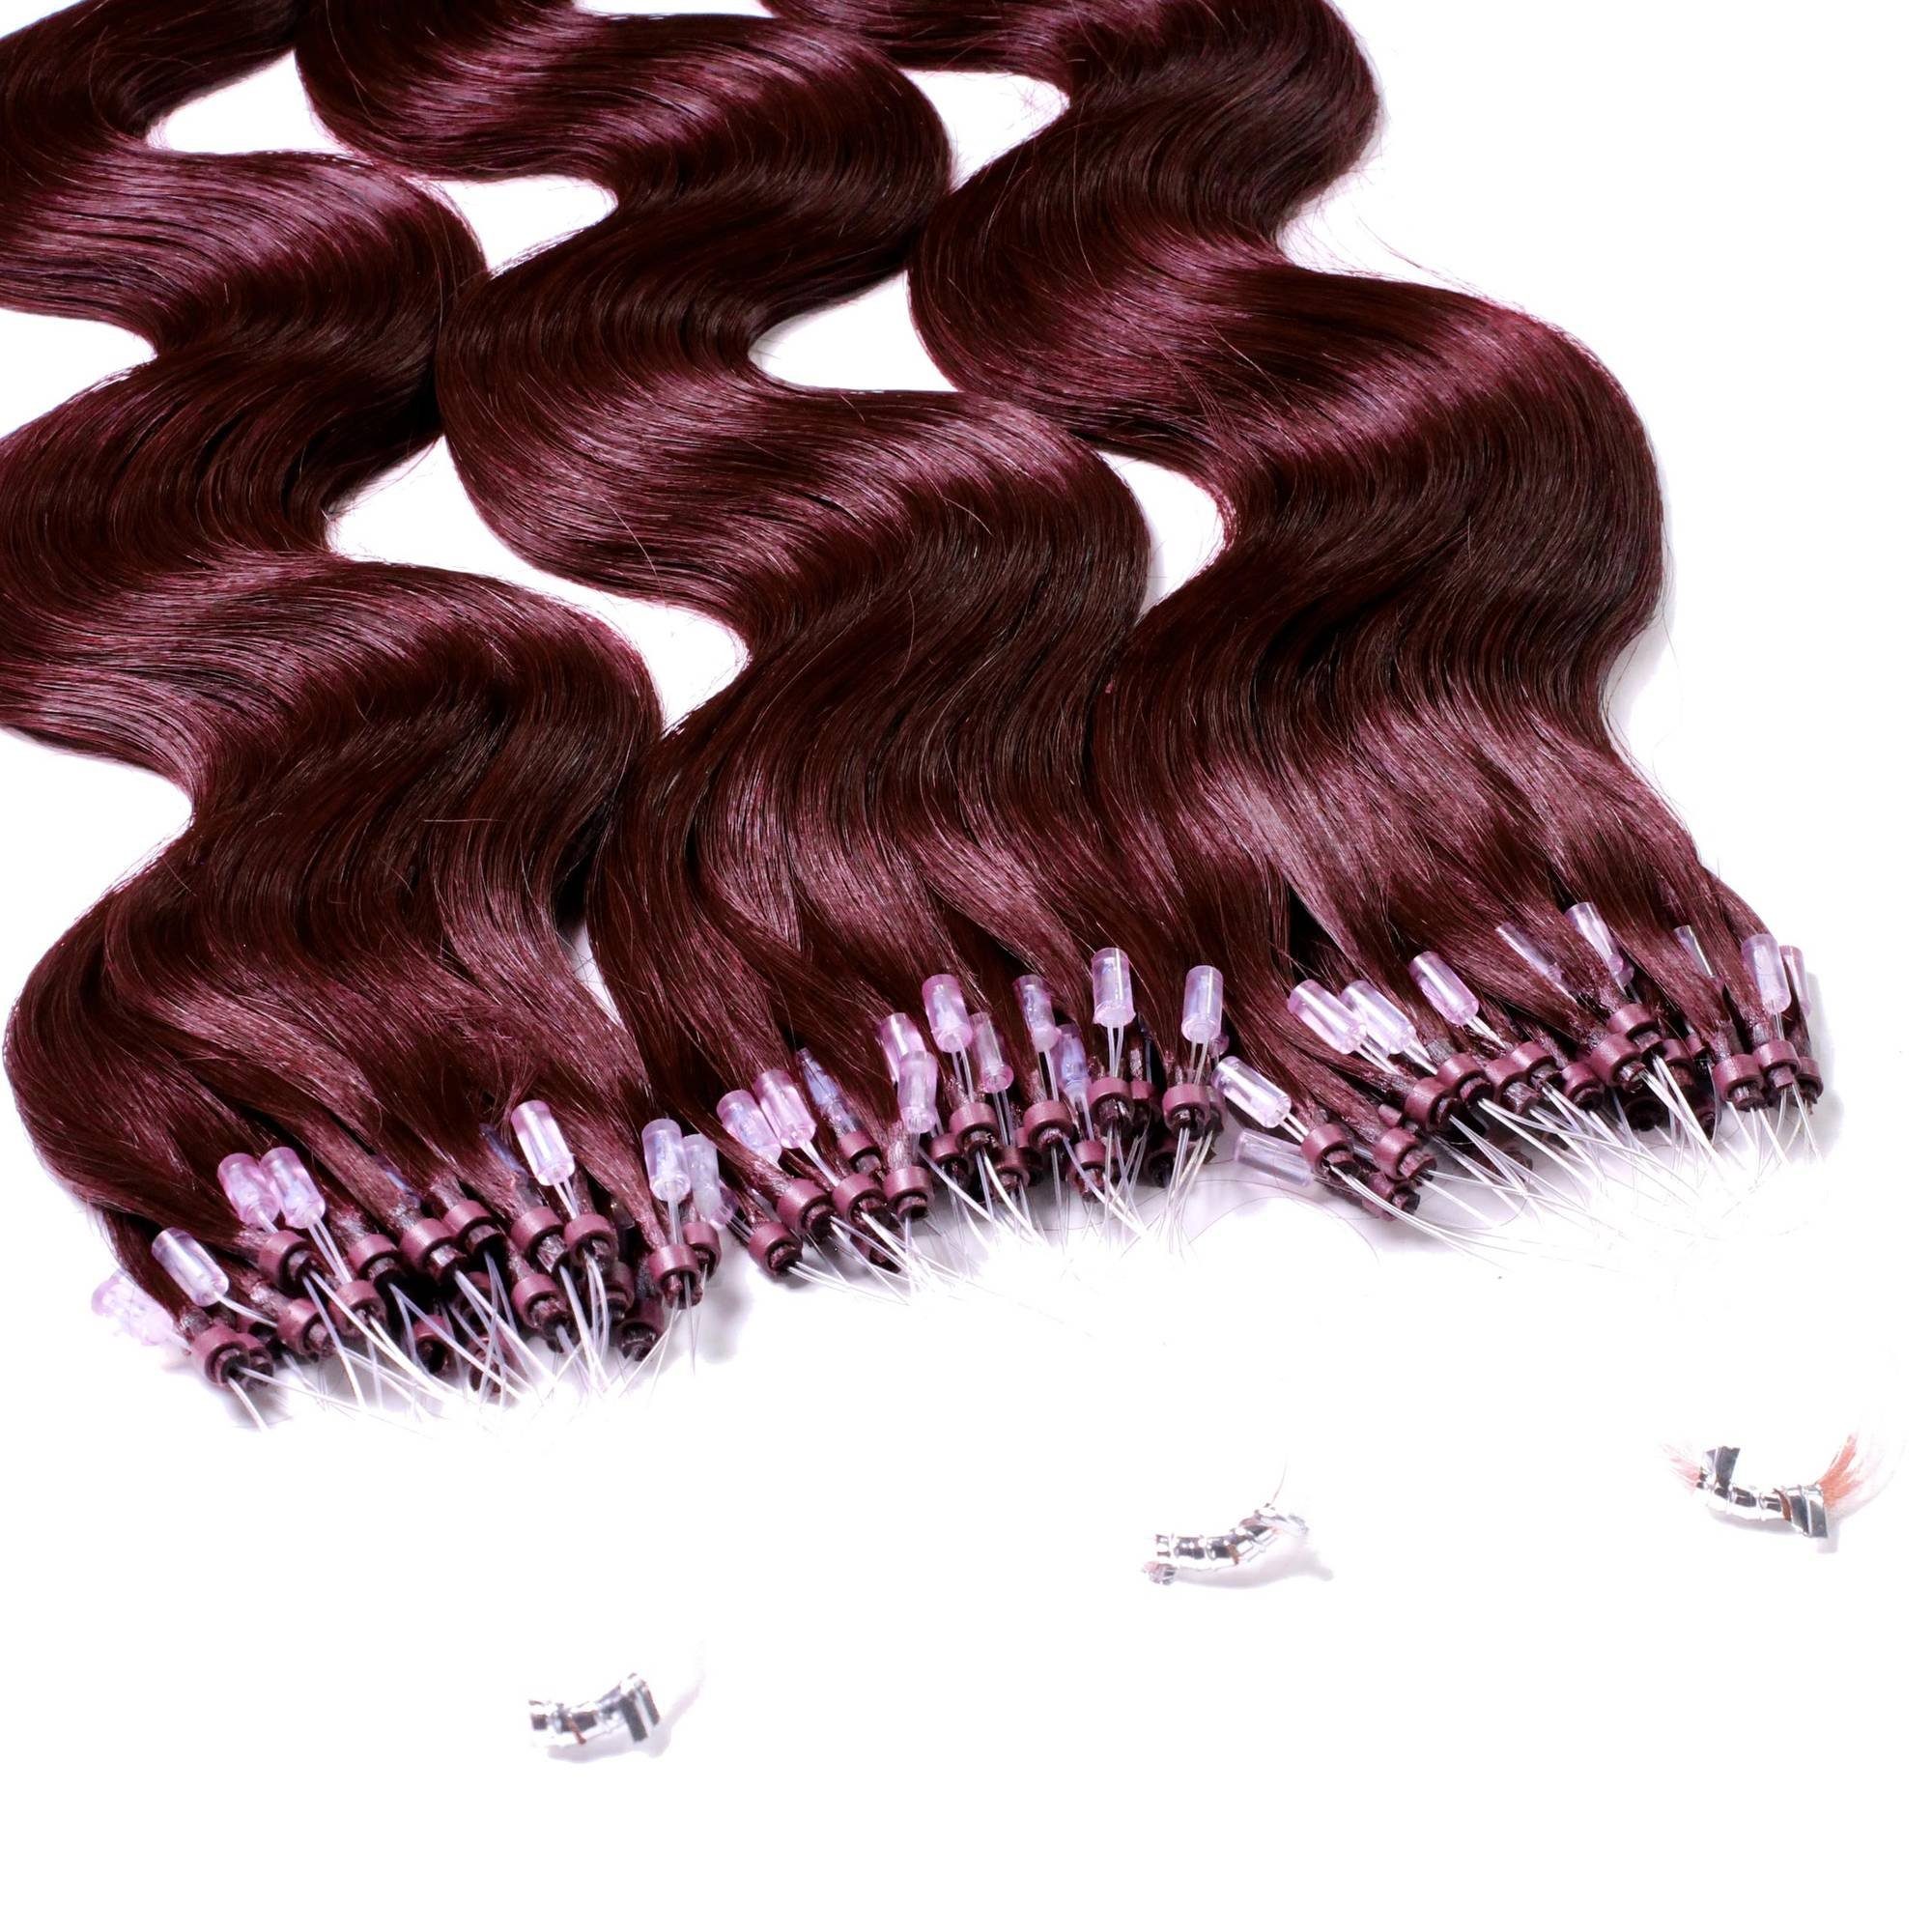 Violett 60cm hair2heart 0.5g - Microring Hellbraun Echthaar-Extension #55/66 gewellt Loops